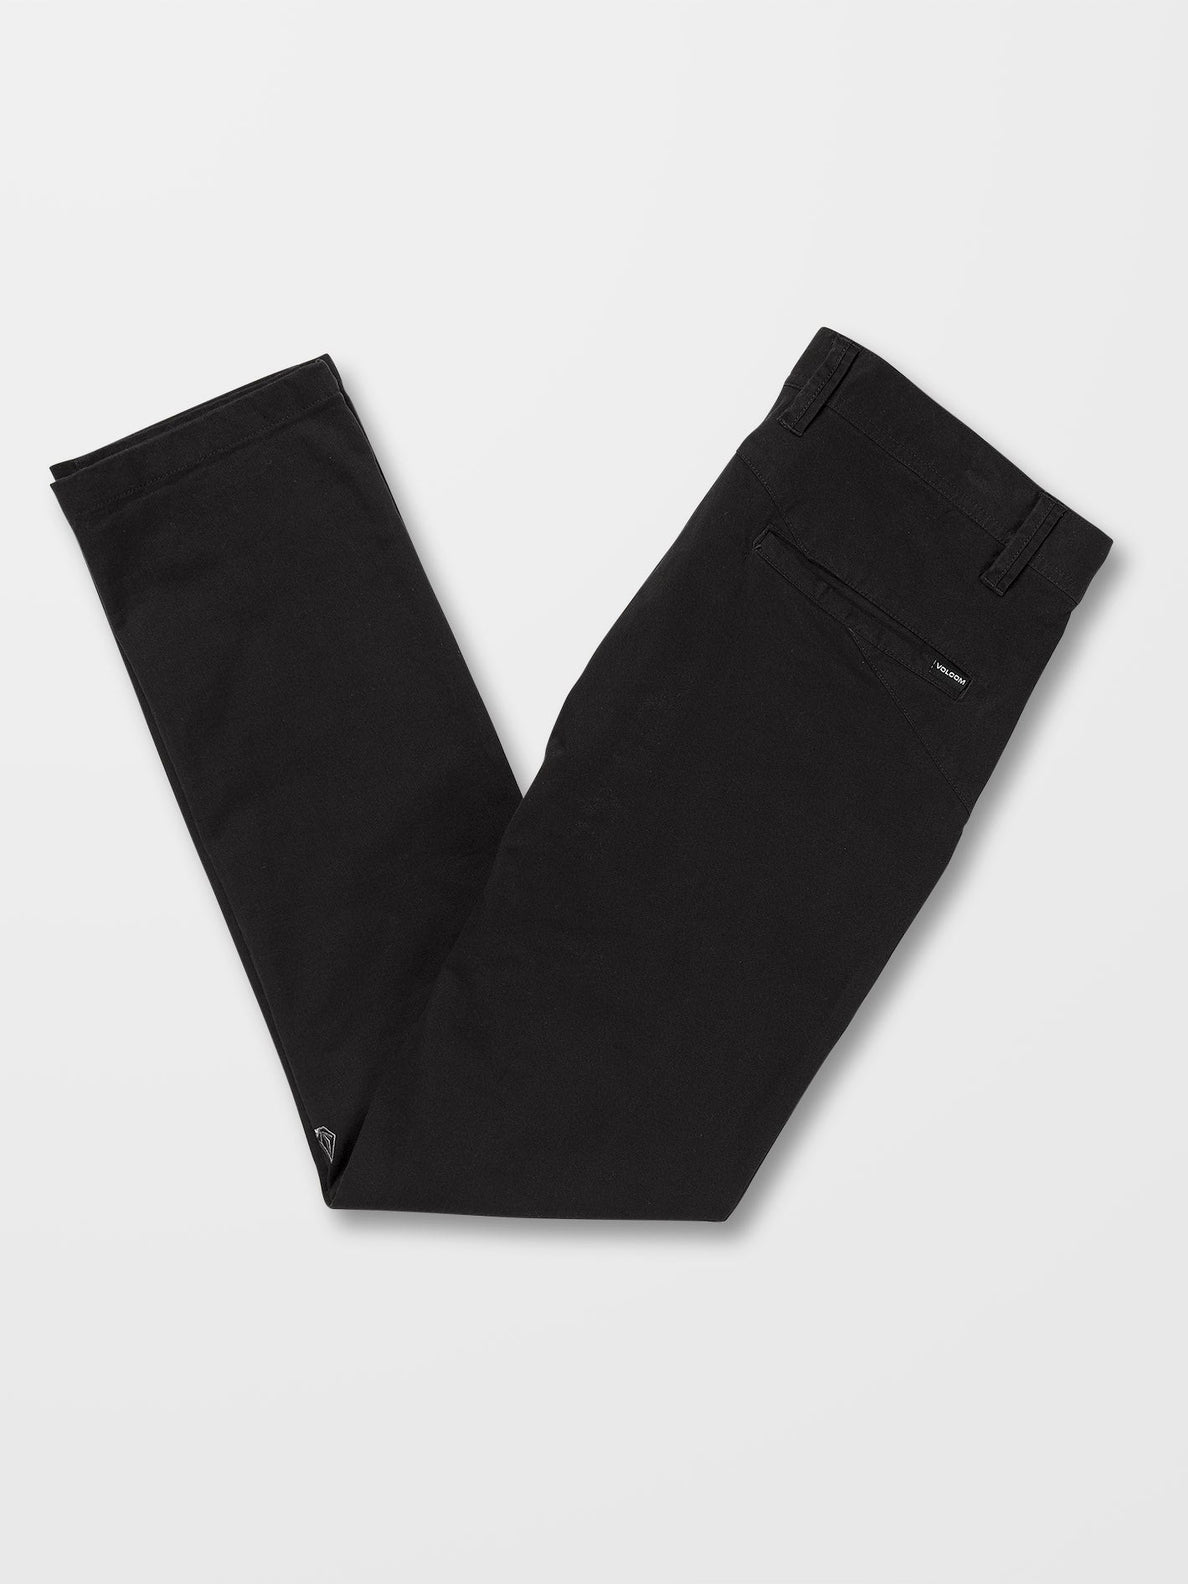 Pantalon Volcom Frickin Slim Chino - Black | Pantalones chinos de hombre | Todos los pantalones de hombre | Volcom Shop | surfdevils.com